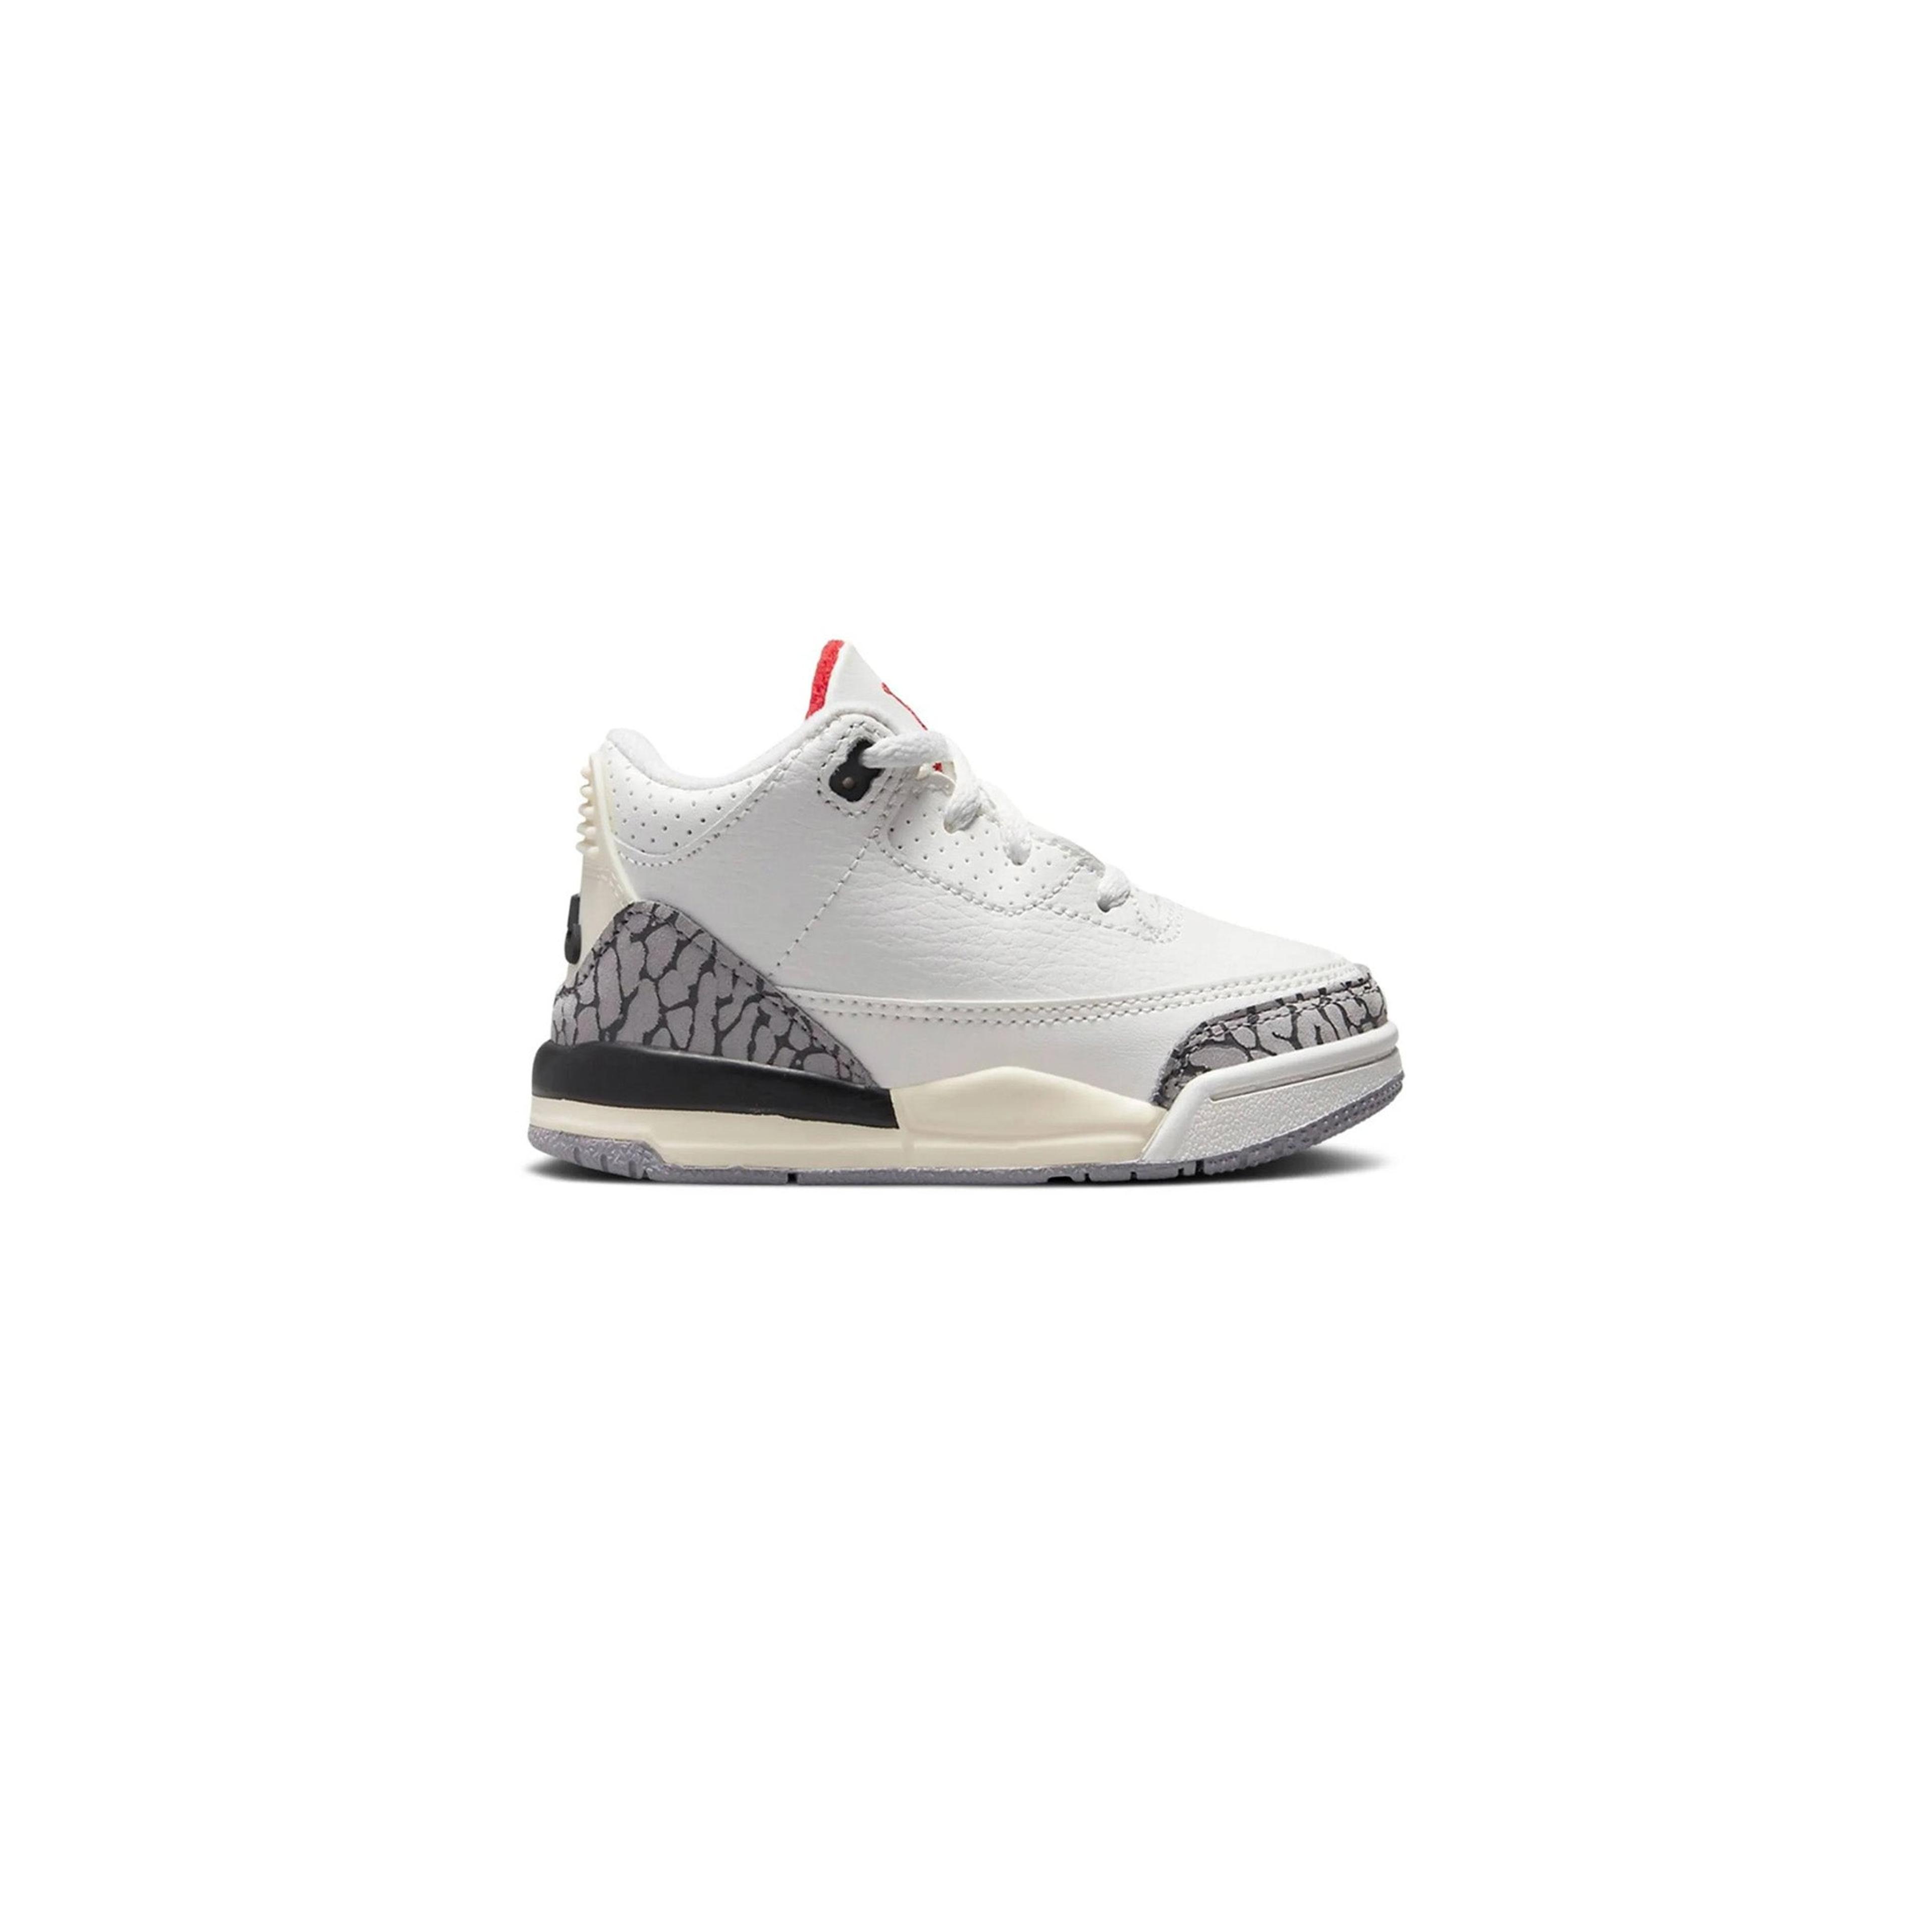 Jordan 3 Retro White Cement Reimagined (TD)